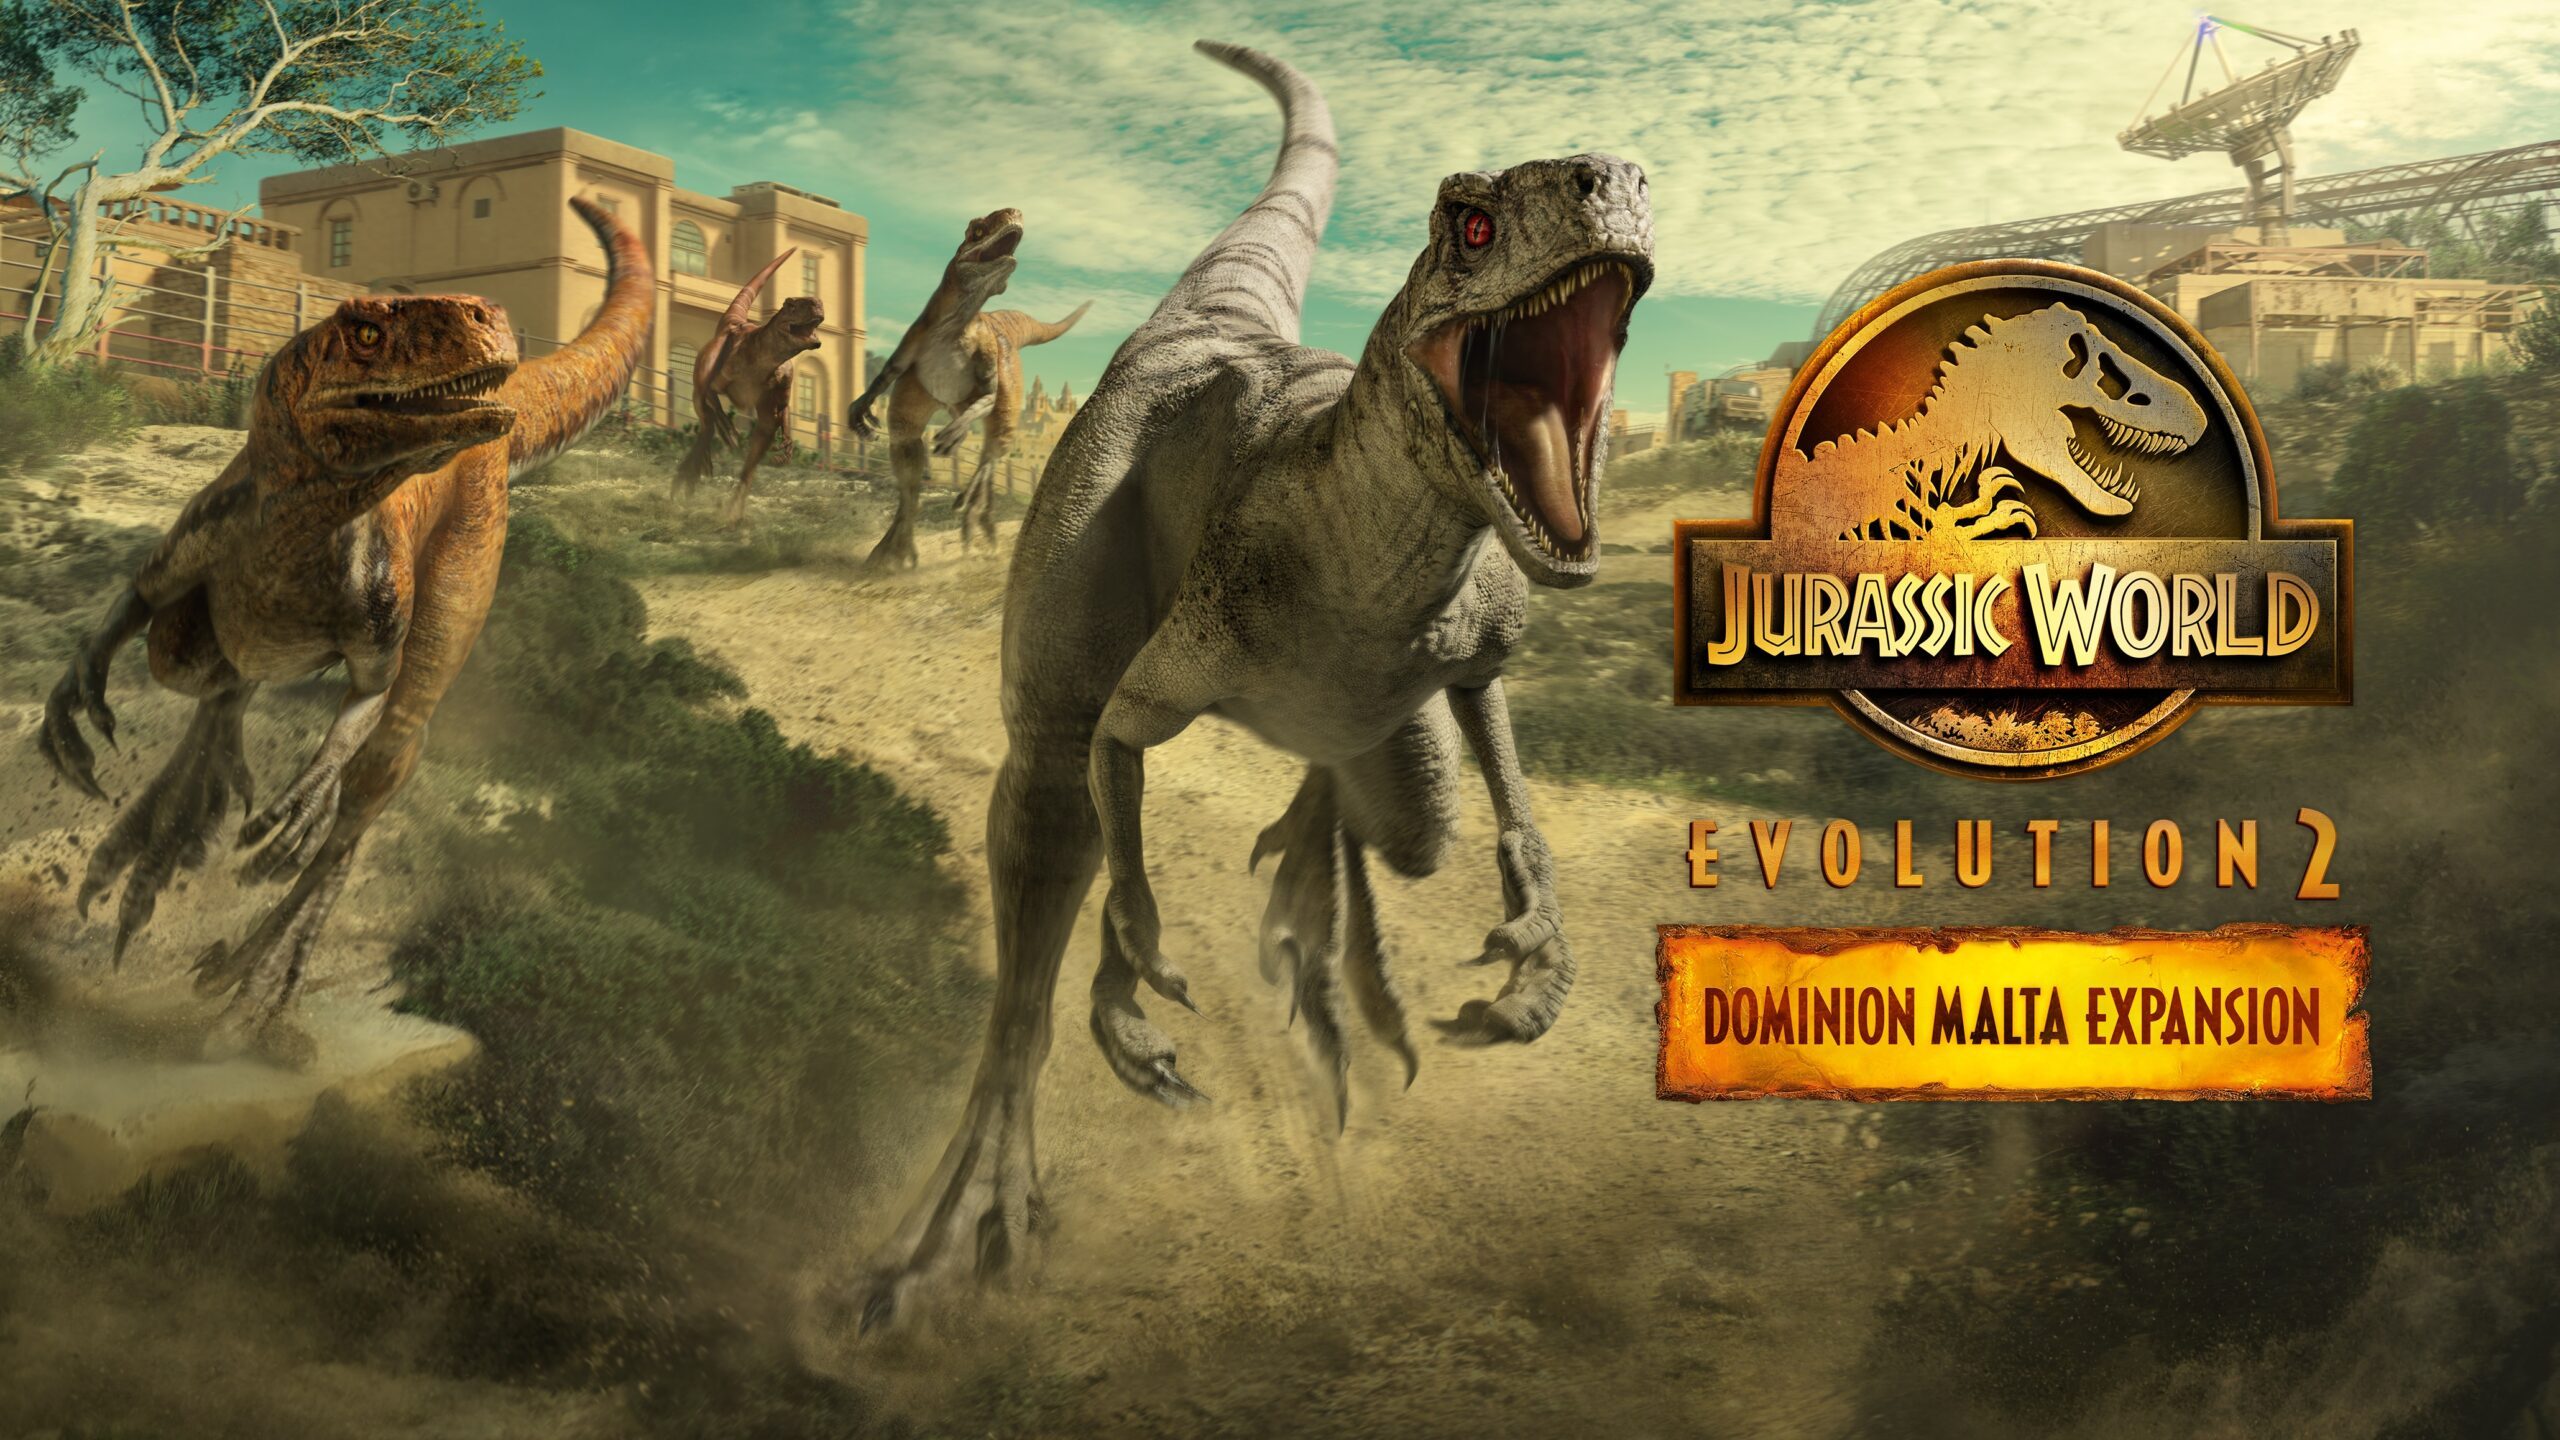 Jurassic world dominion movie download telegram